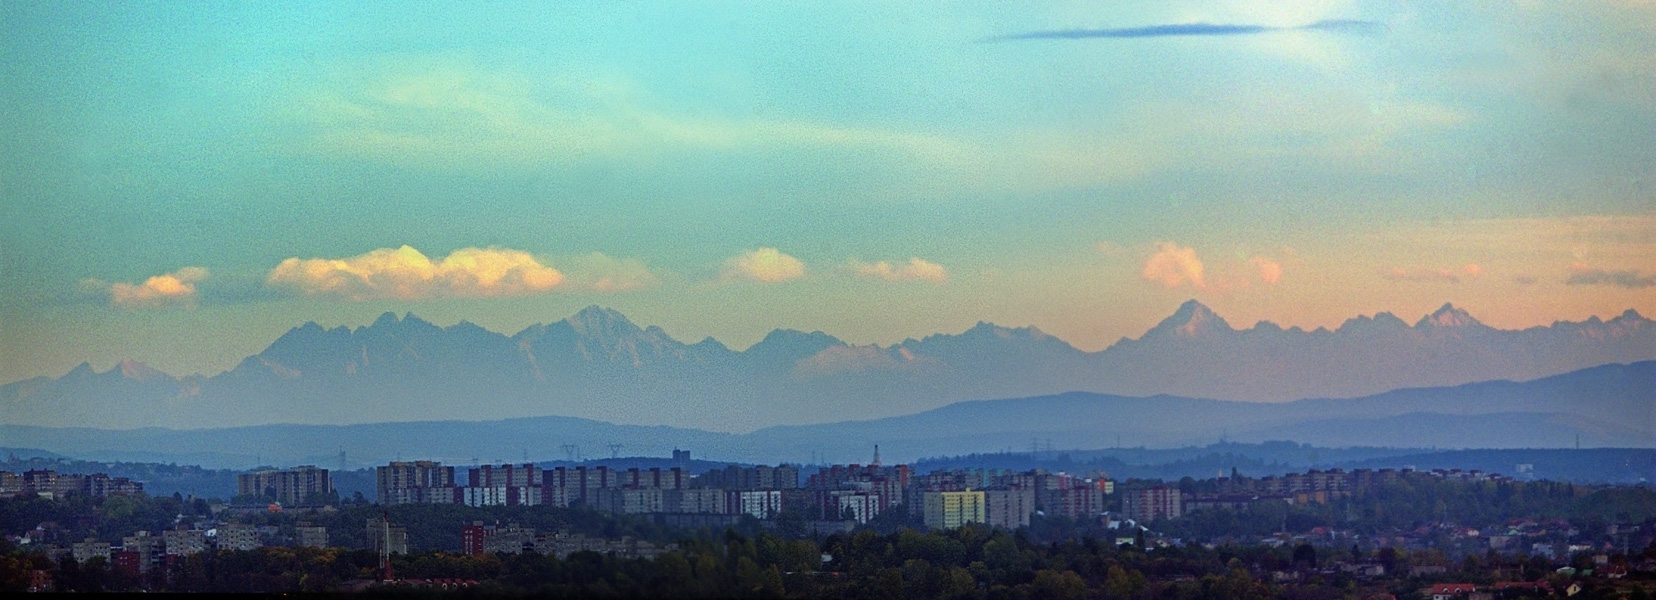 Panorama Tatr i Beskidów z Góry Siewierskiej